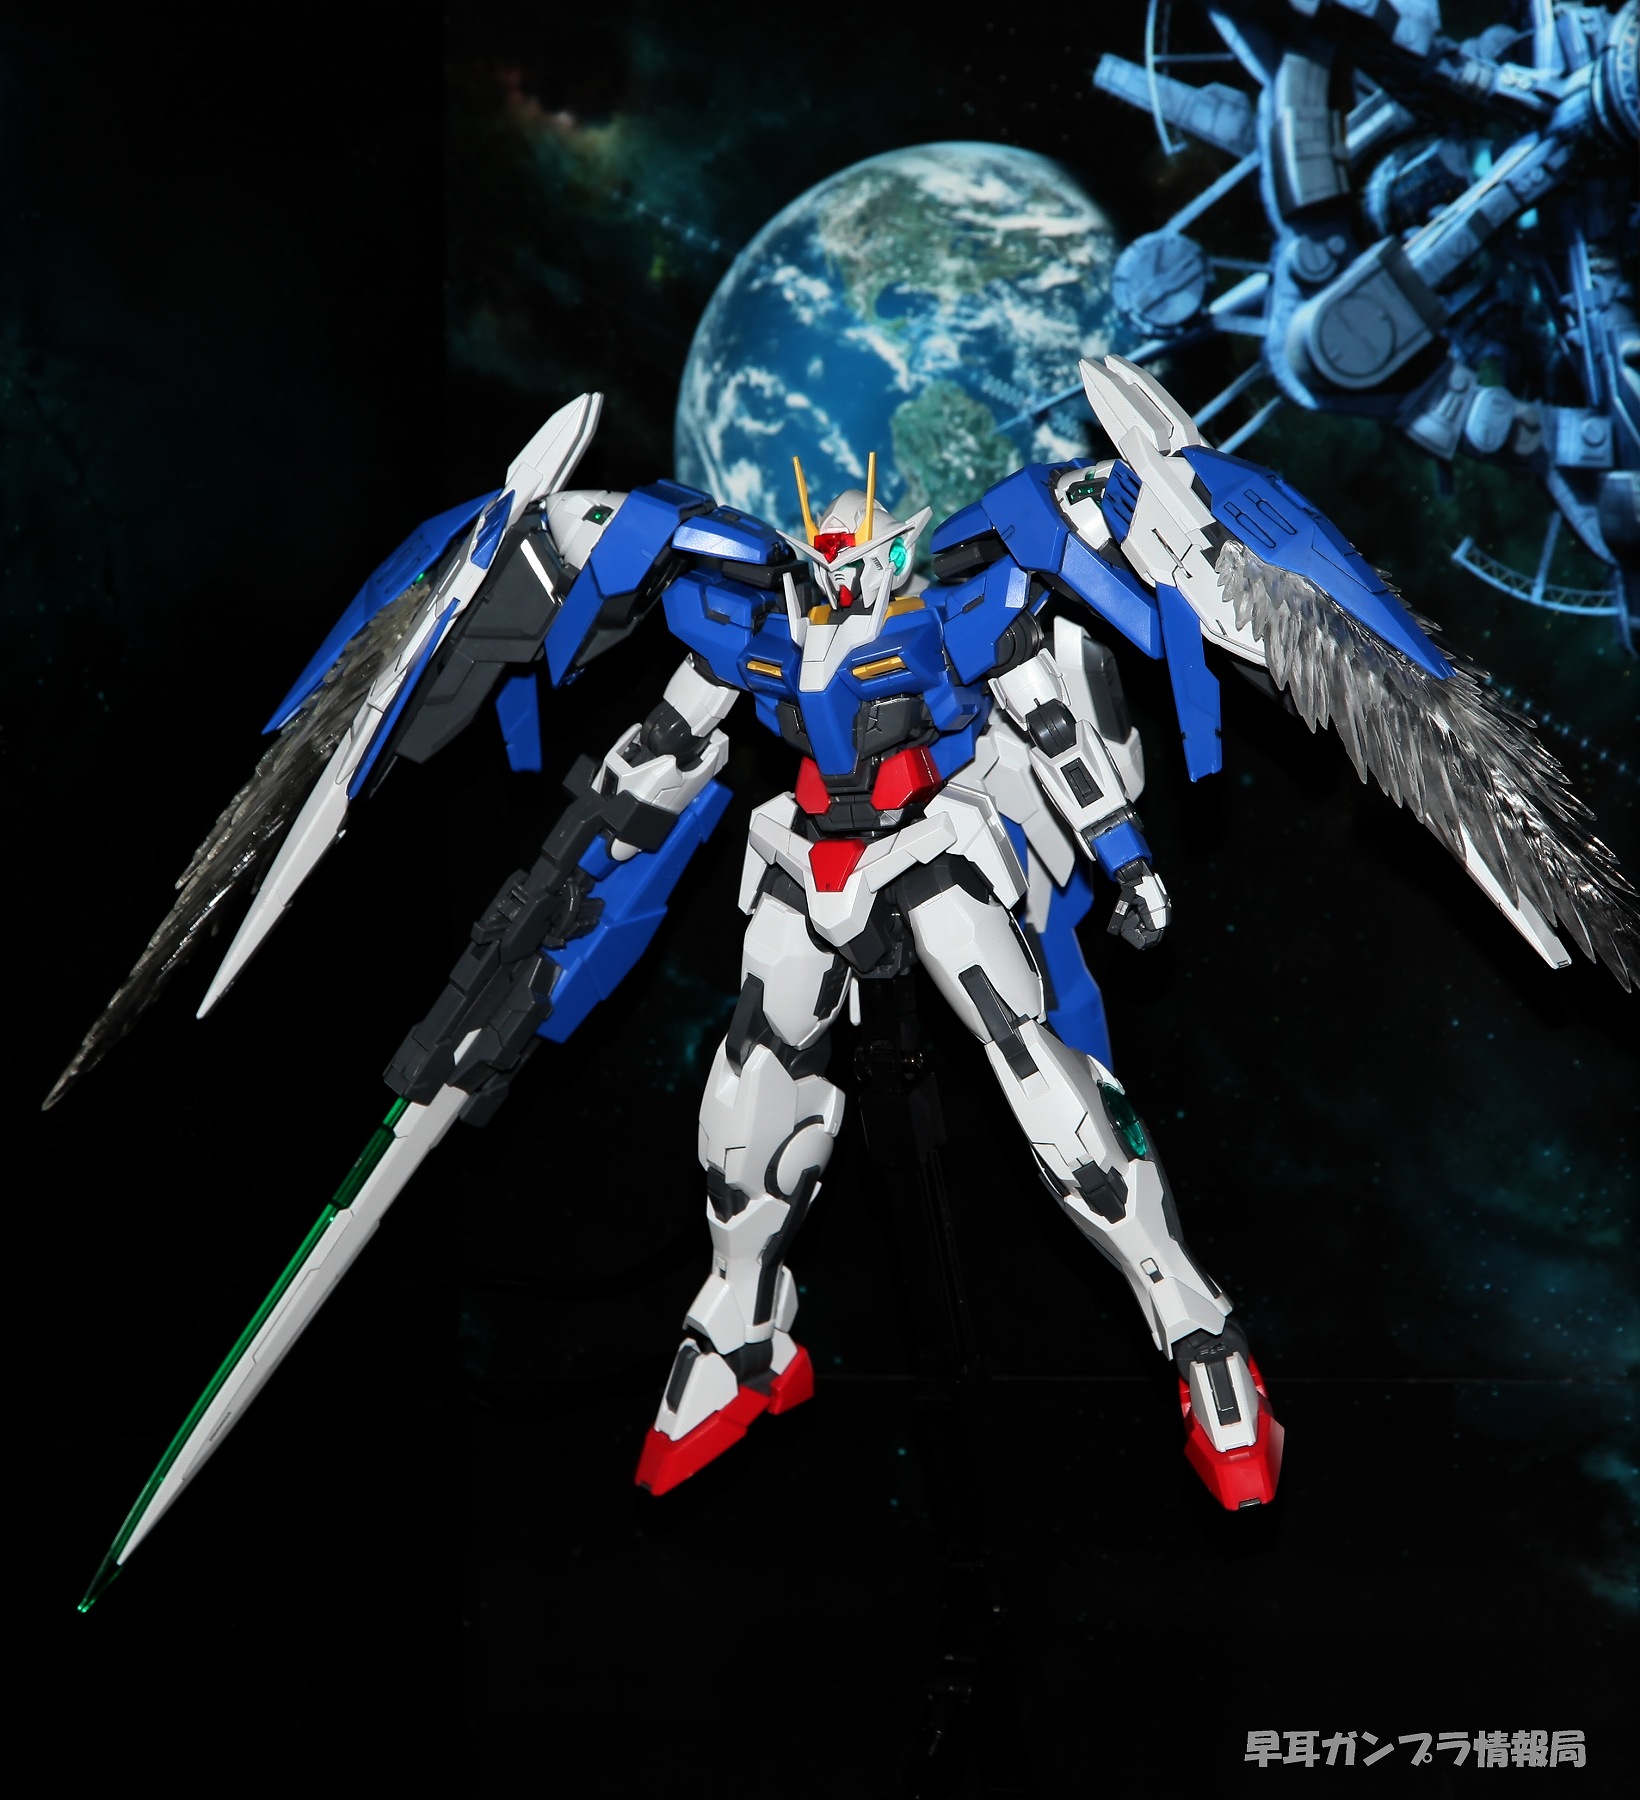 Gn Gnr Gundam Raiser No New Wallpaper Size Image